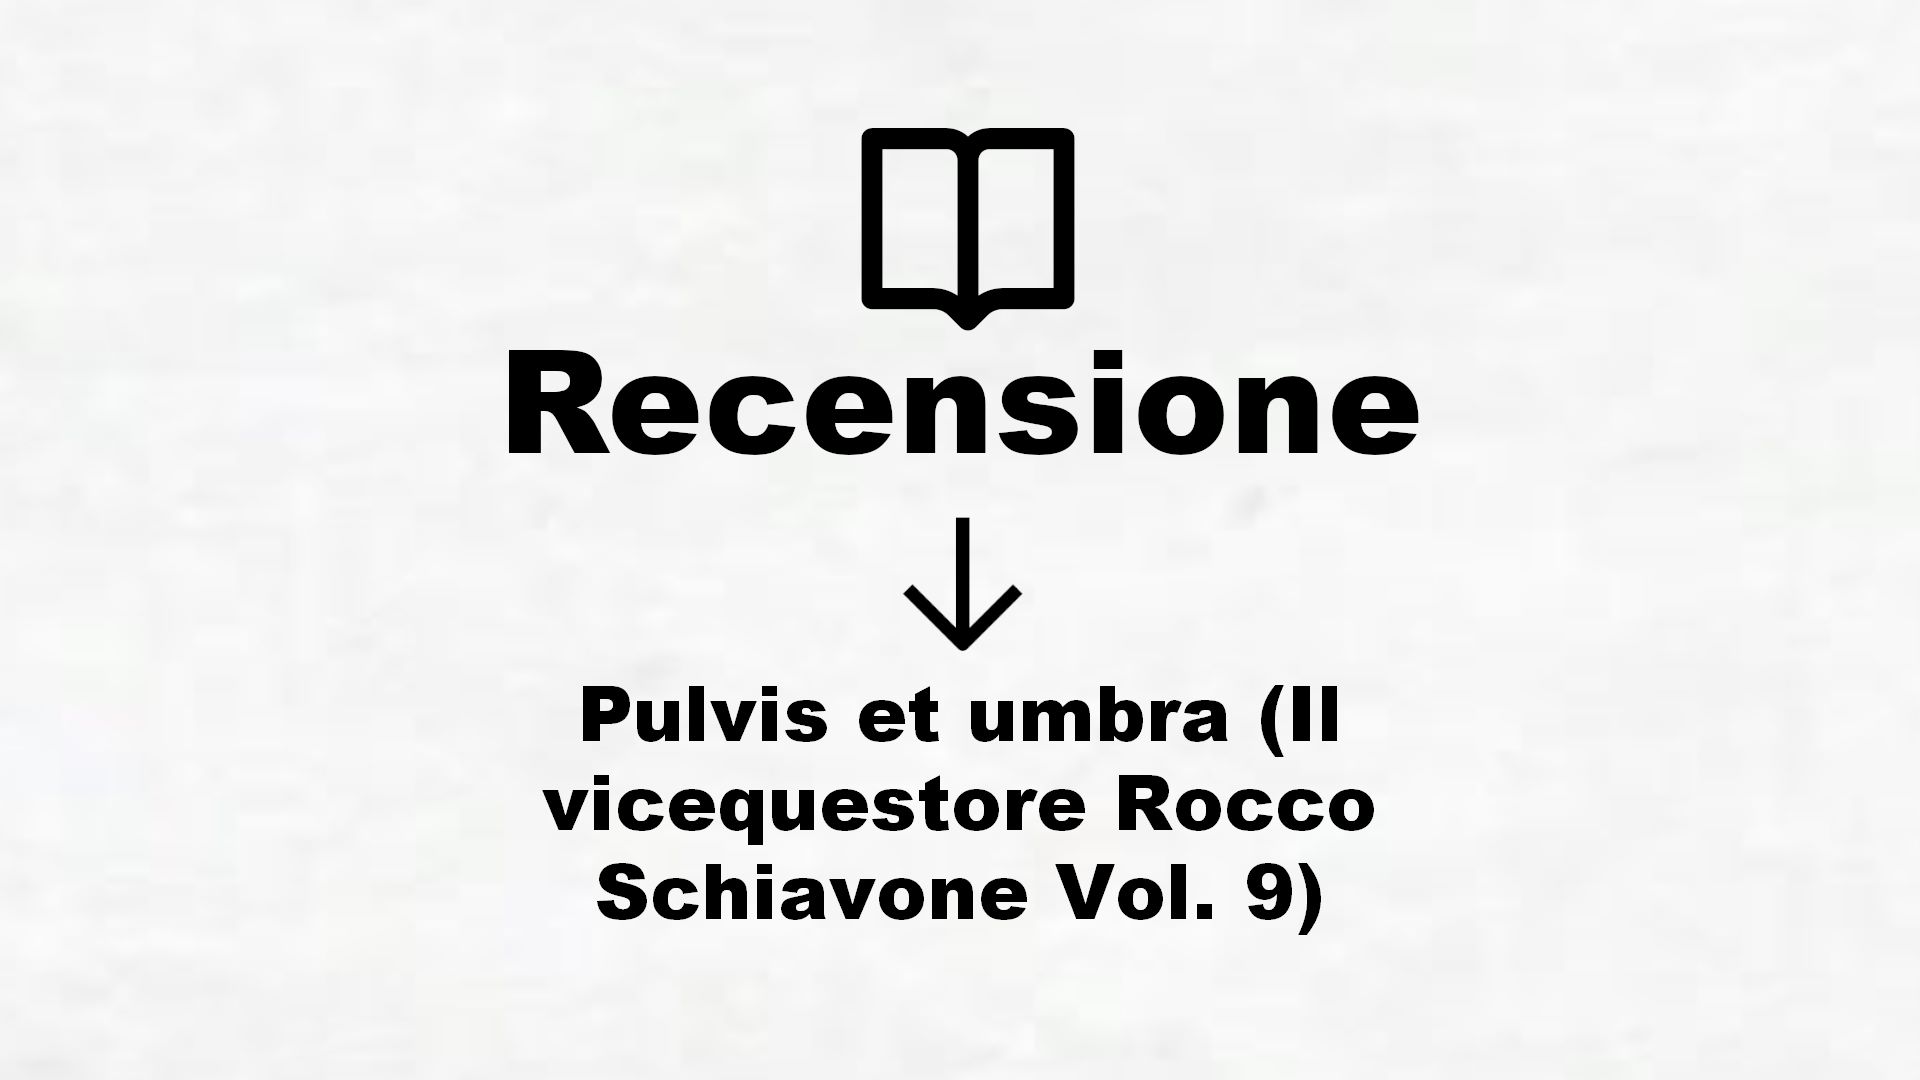 Pulvis et umbra (Il vicequestore Rocco Schiavone Vol. 9) – Recensione Libro